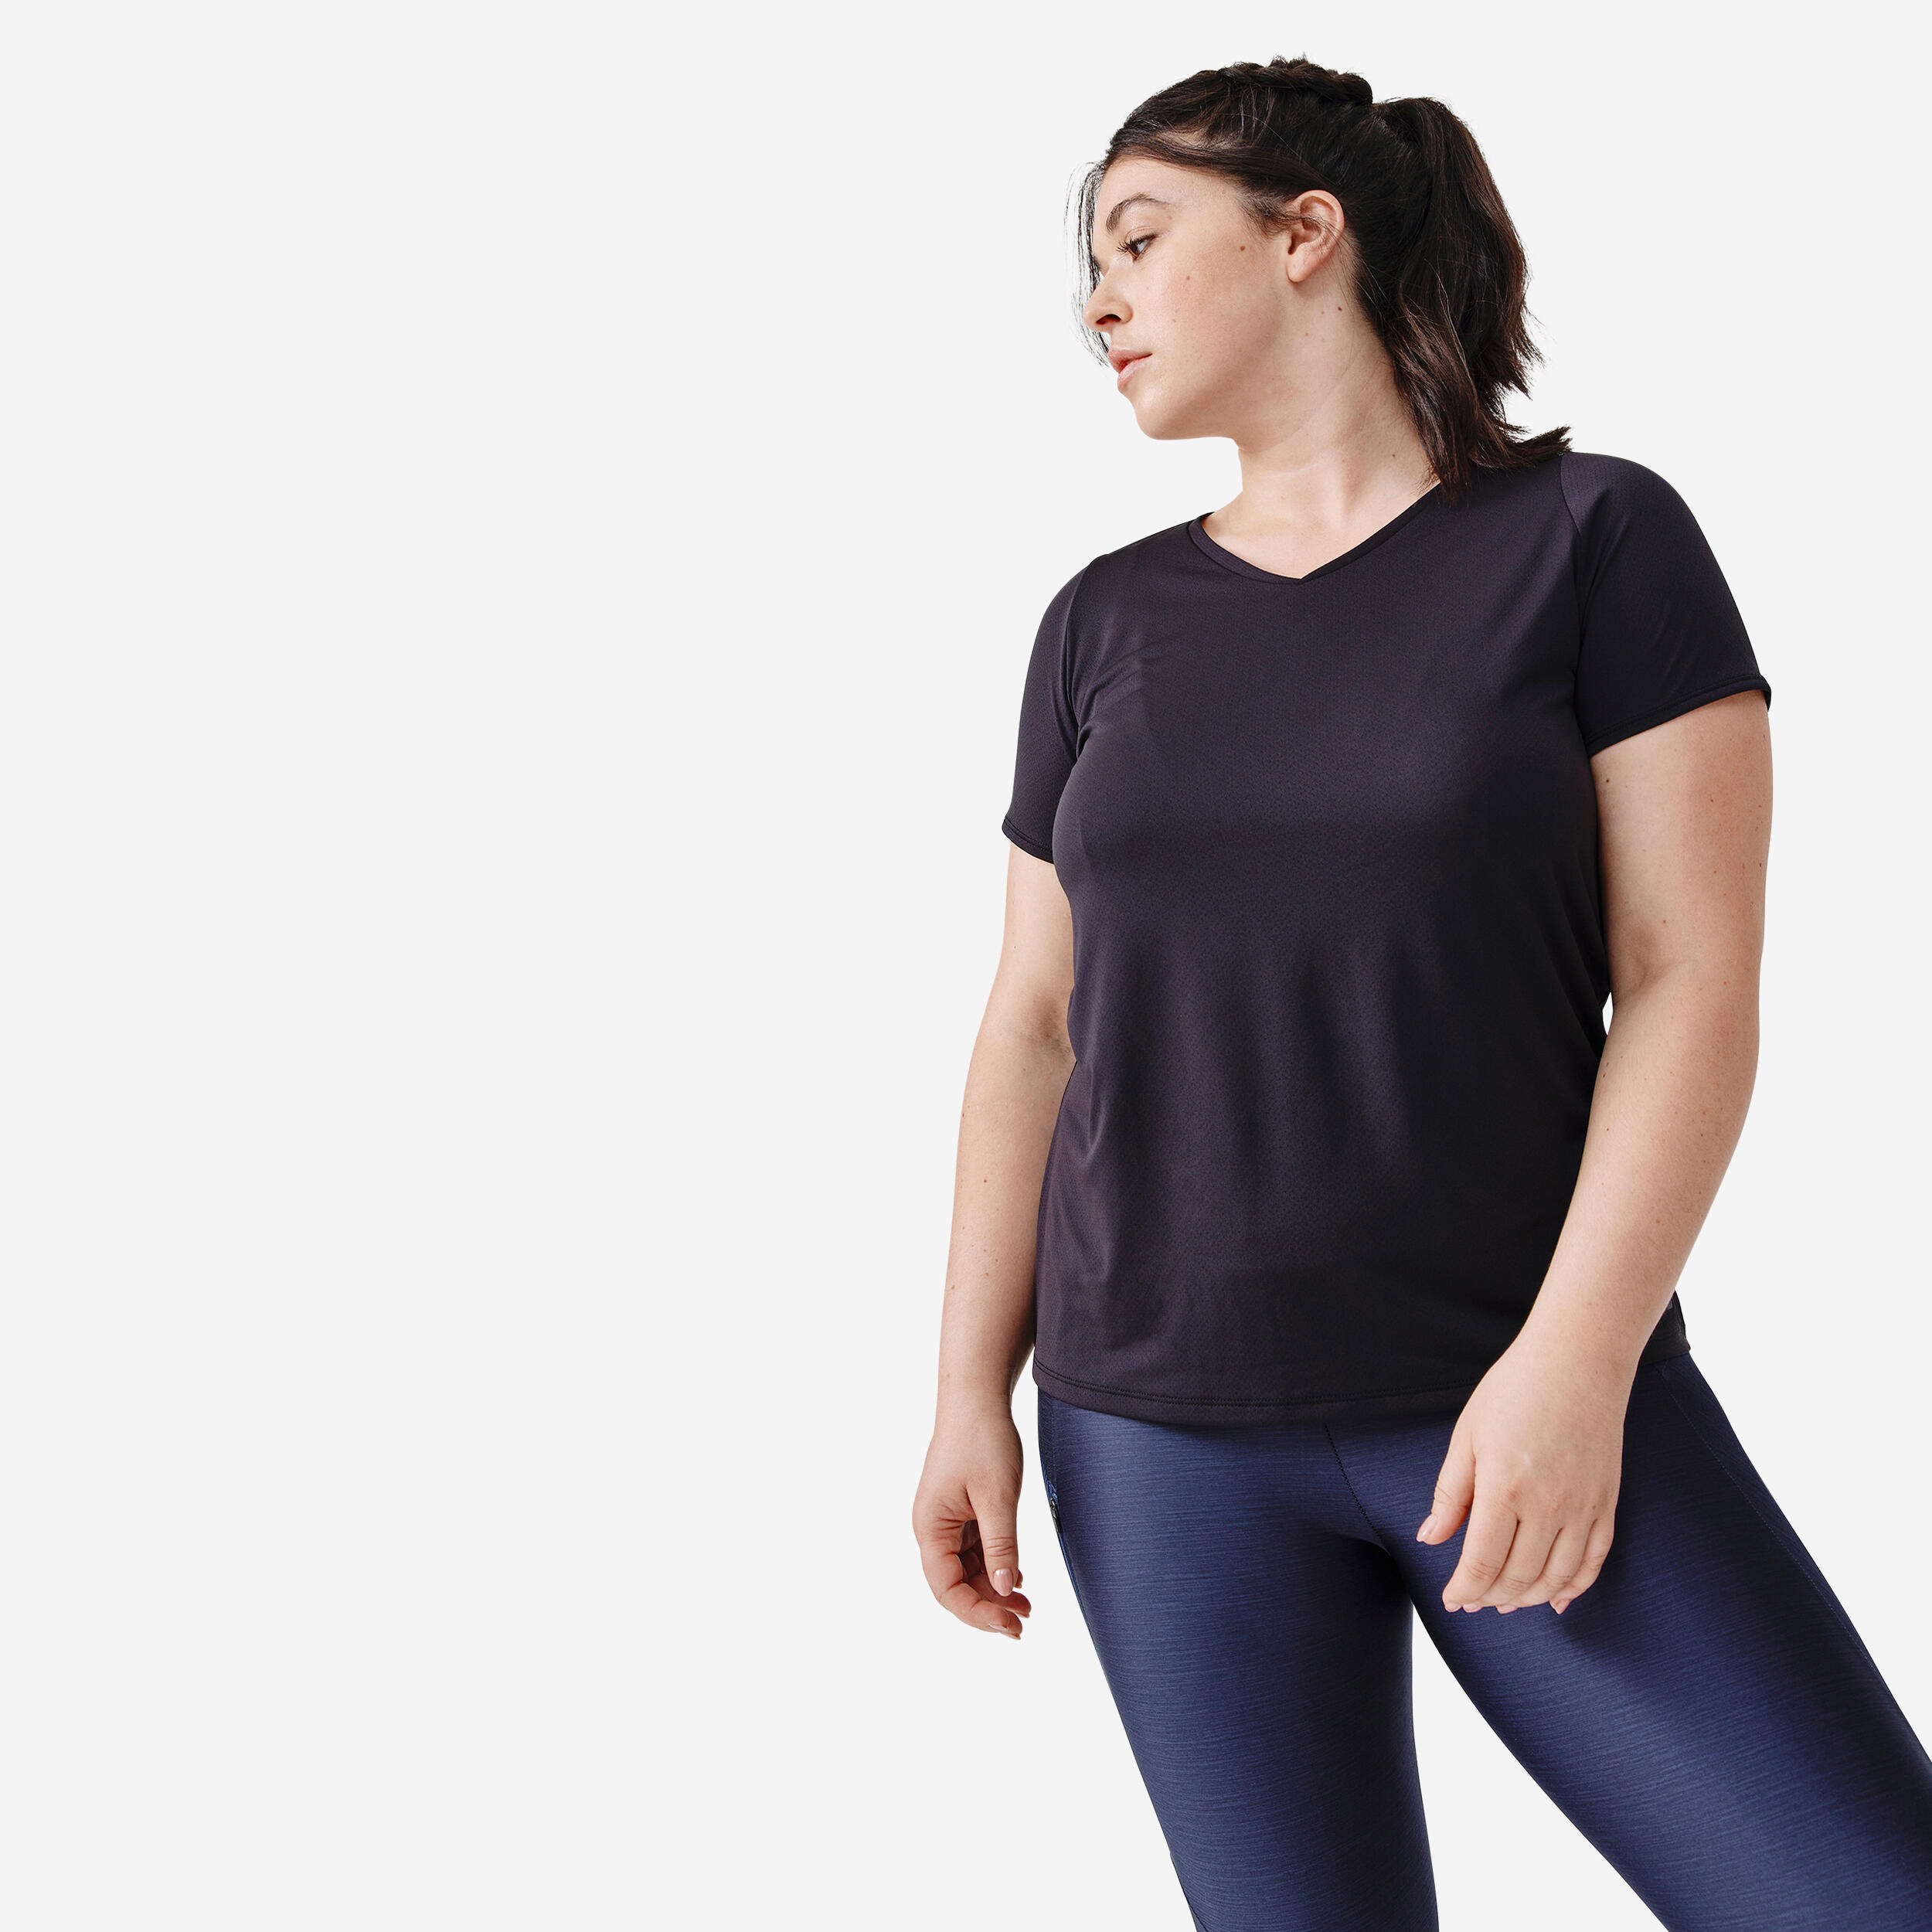 KALENJI Women's breathable short-sleeved running T-shirt Dry - black 